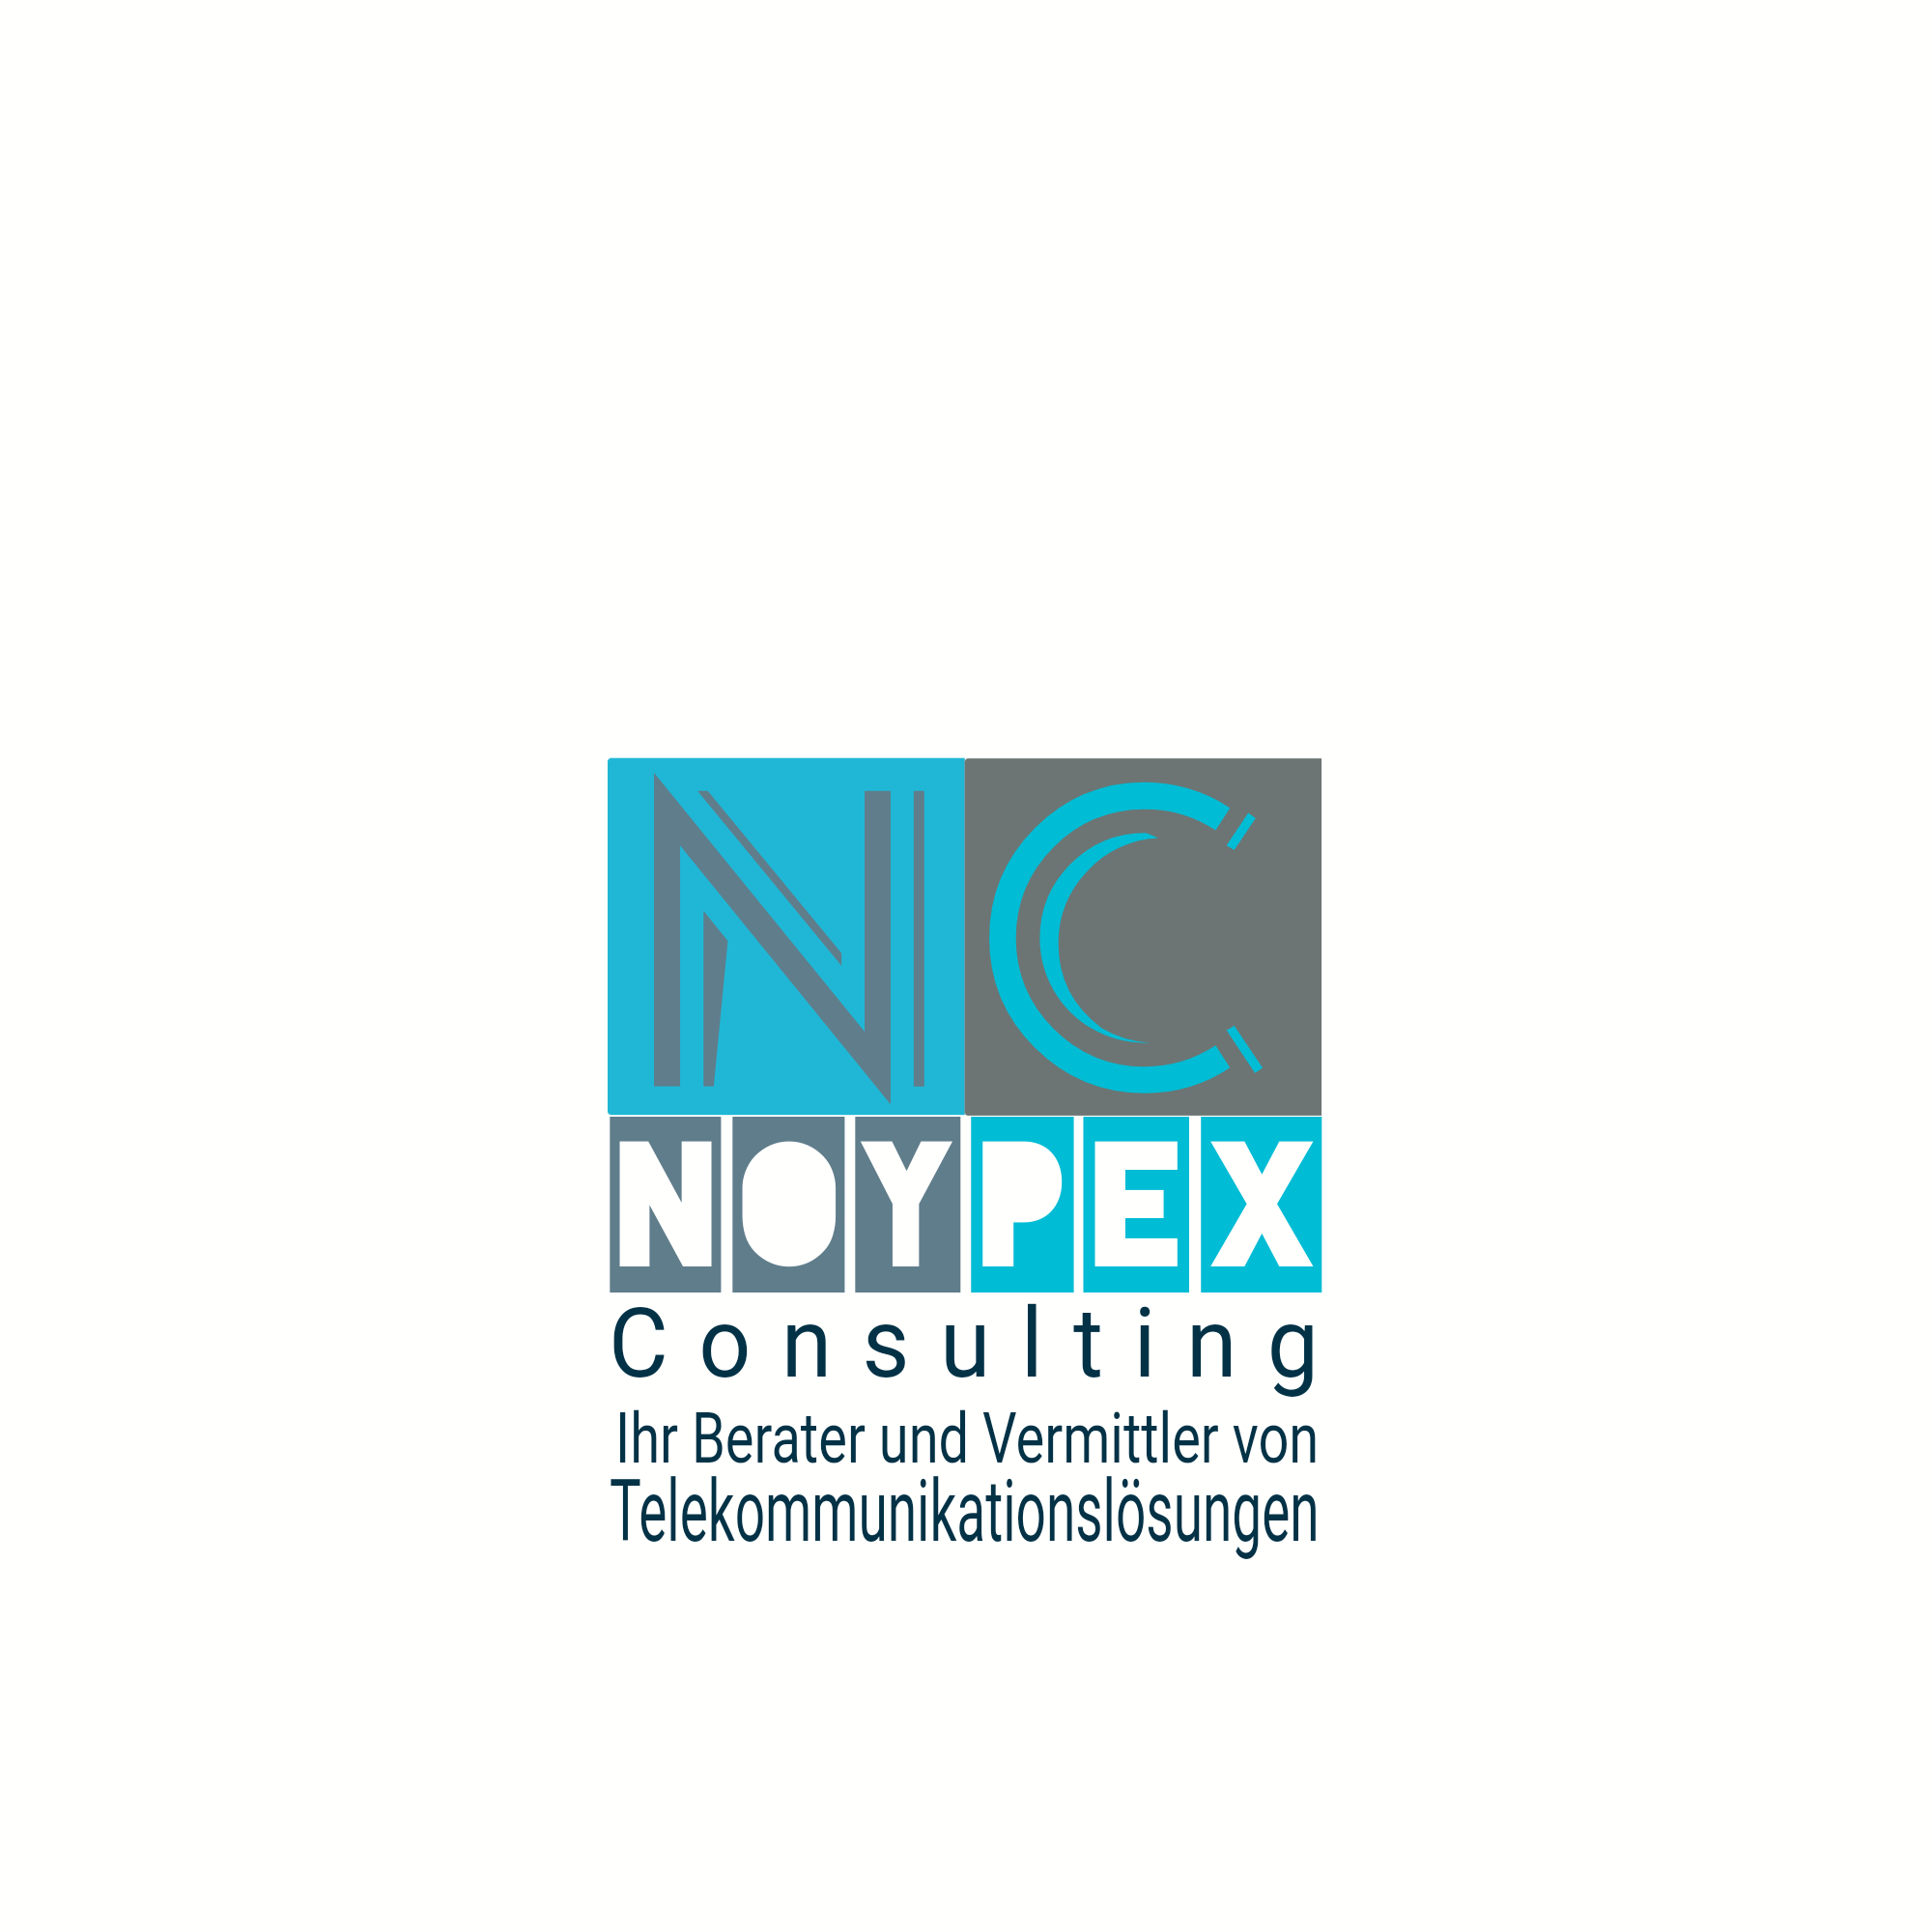 Noypex Consulting, Henrik-Ibsen-Str. 9 in Rostock